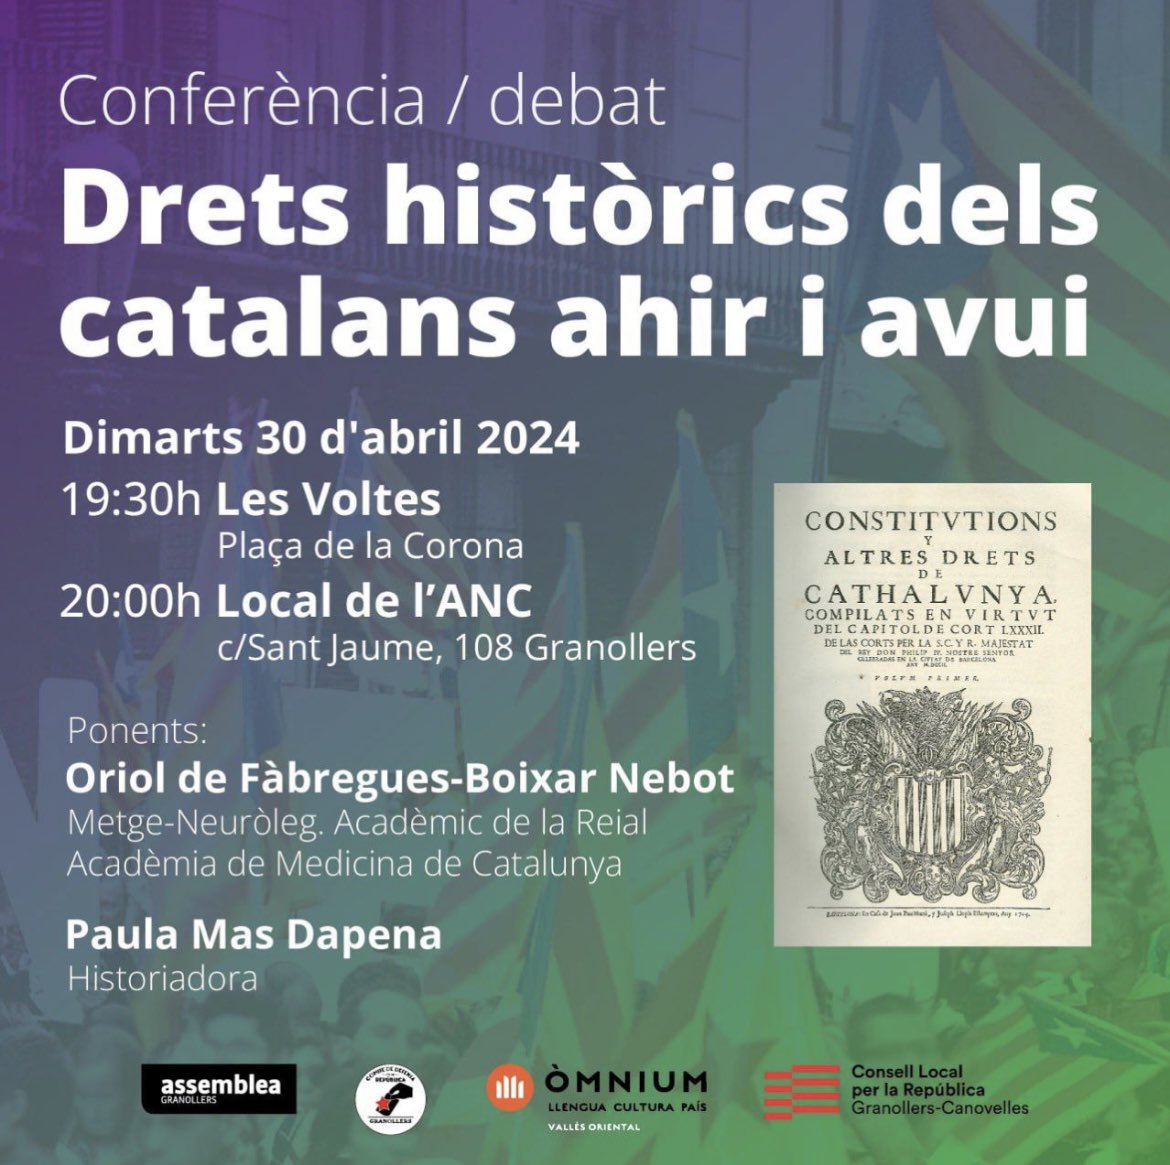 Conferència/debat | Drets històrics dels catalans ahir i avui